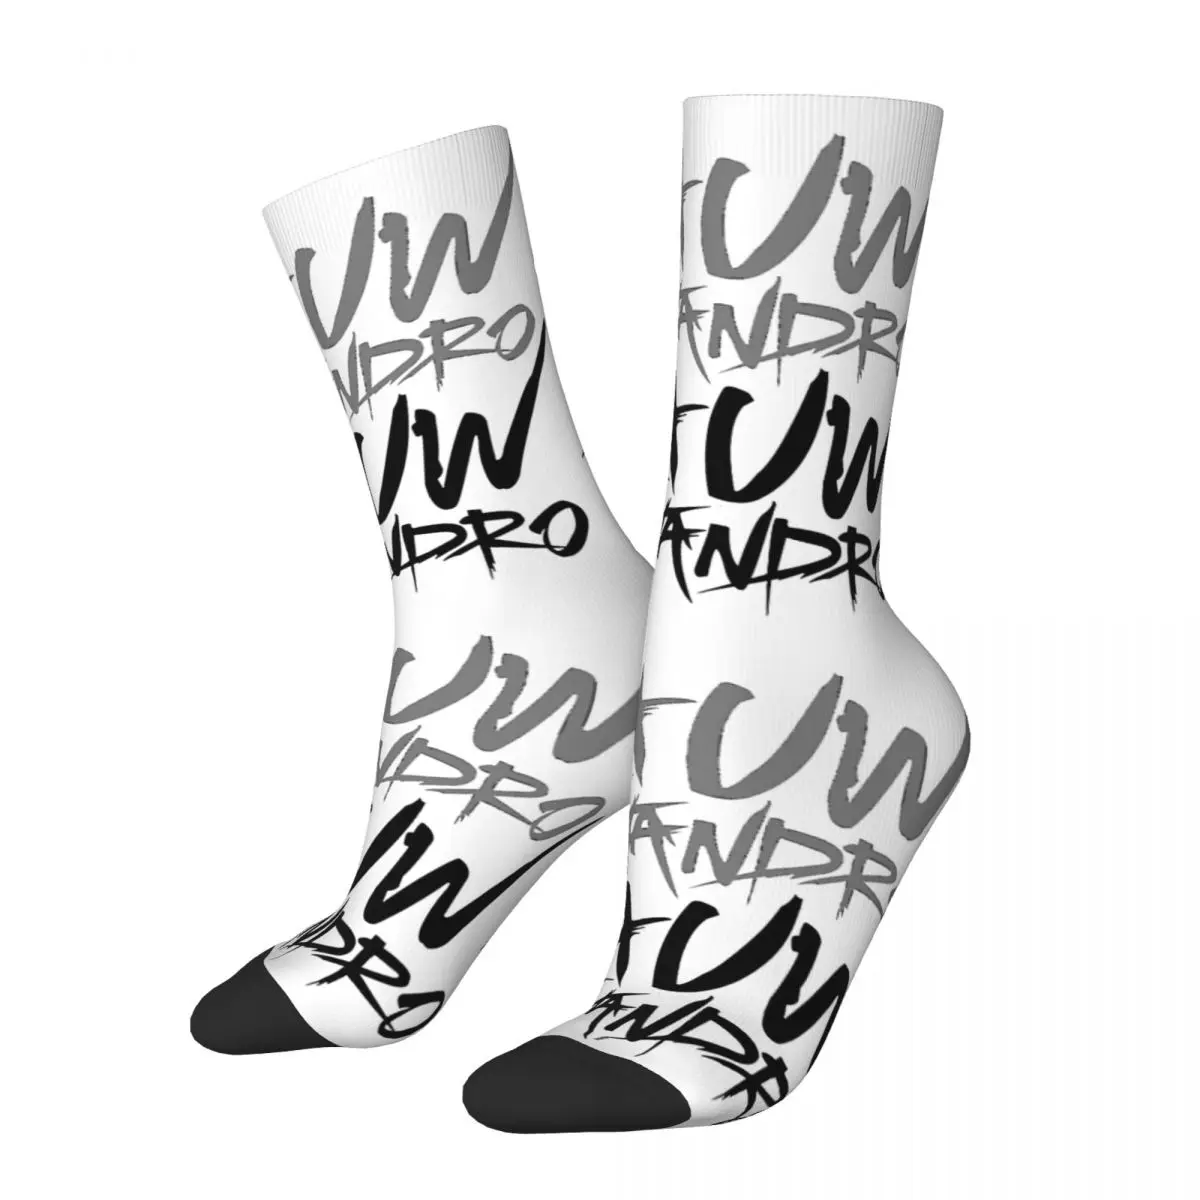 

Autumn Winter Crazy Design Men's Women's Rauw Alejandro Rapper Socks Hip Hop Non-slip Basketball Socks